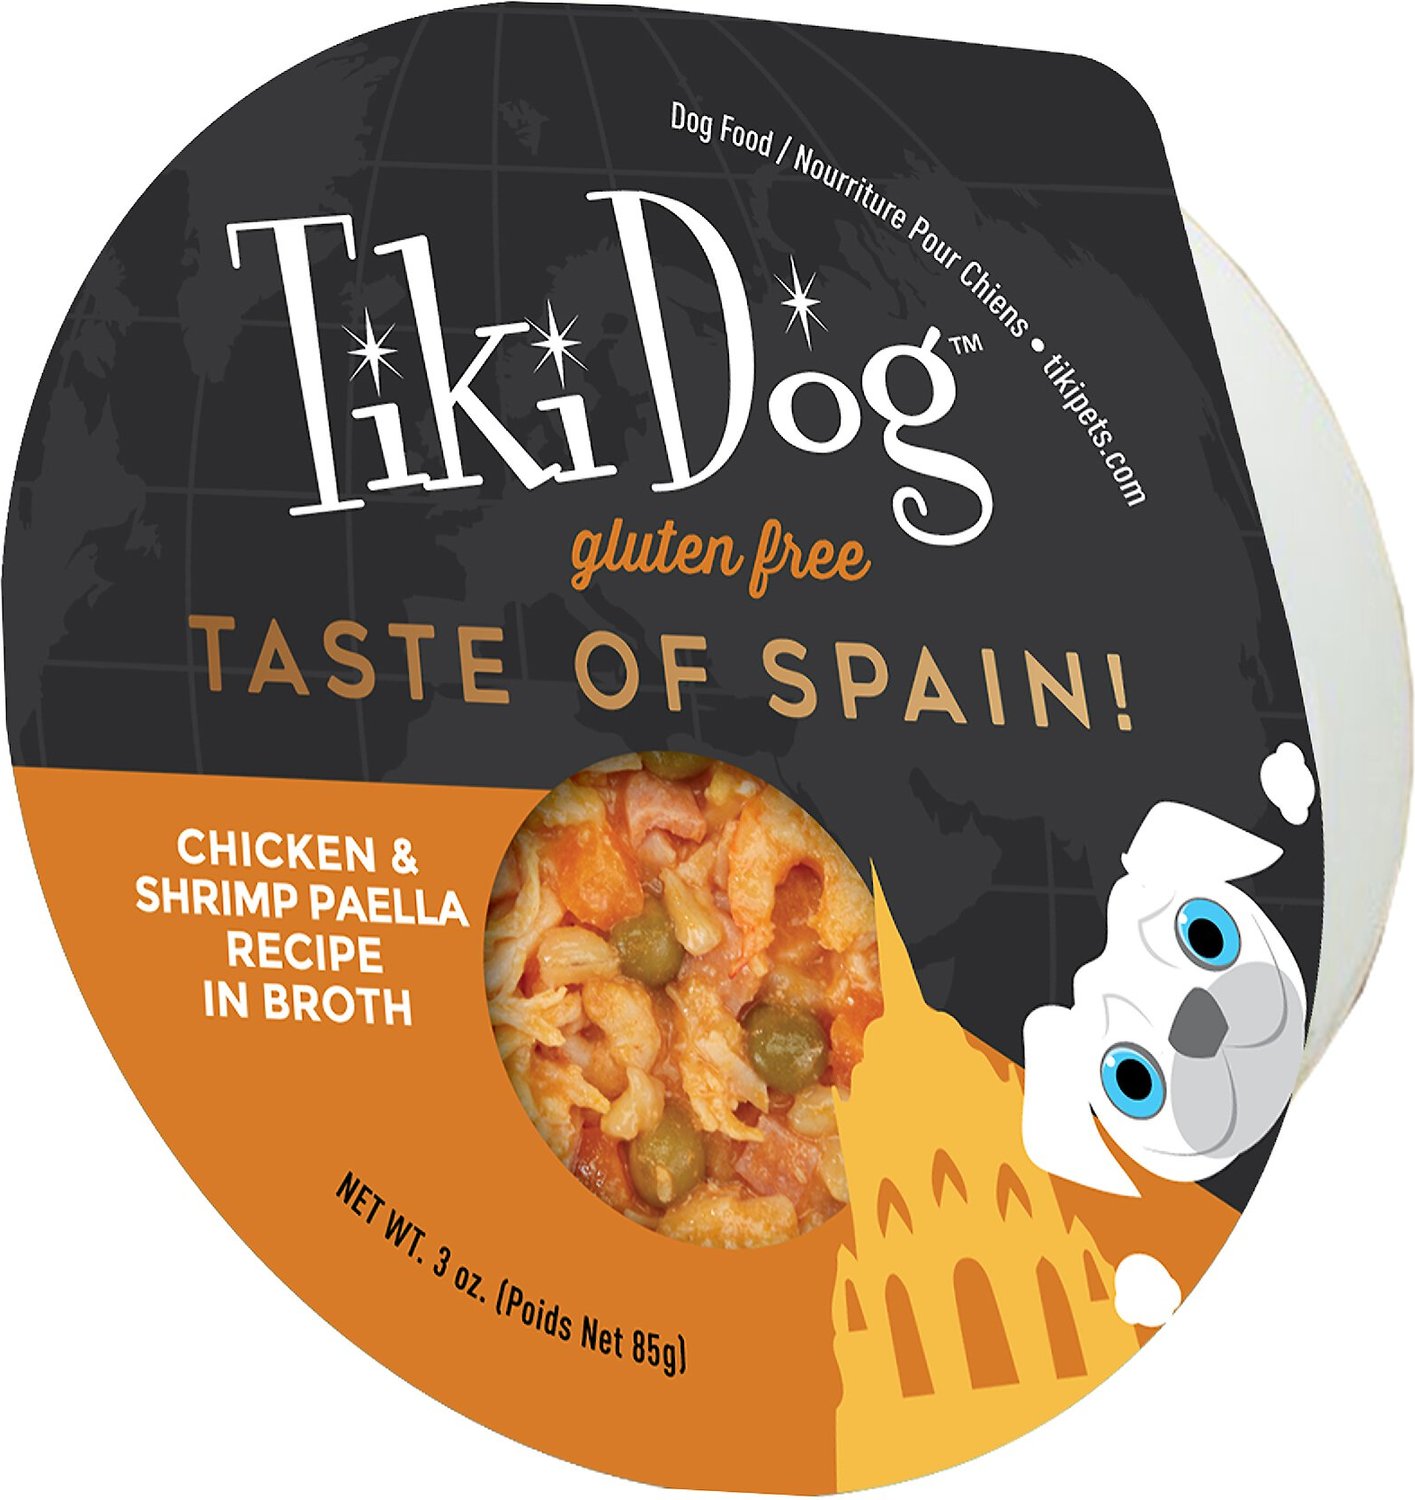 Tiki Dog Taste of Spain Chicken & Shrimp Paella in Broth Gluten-Free